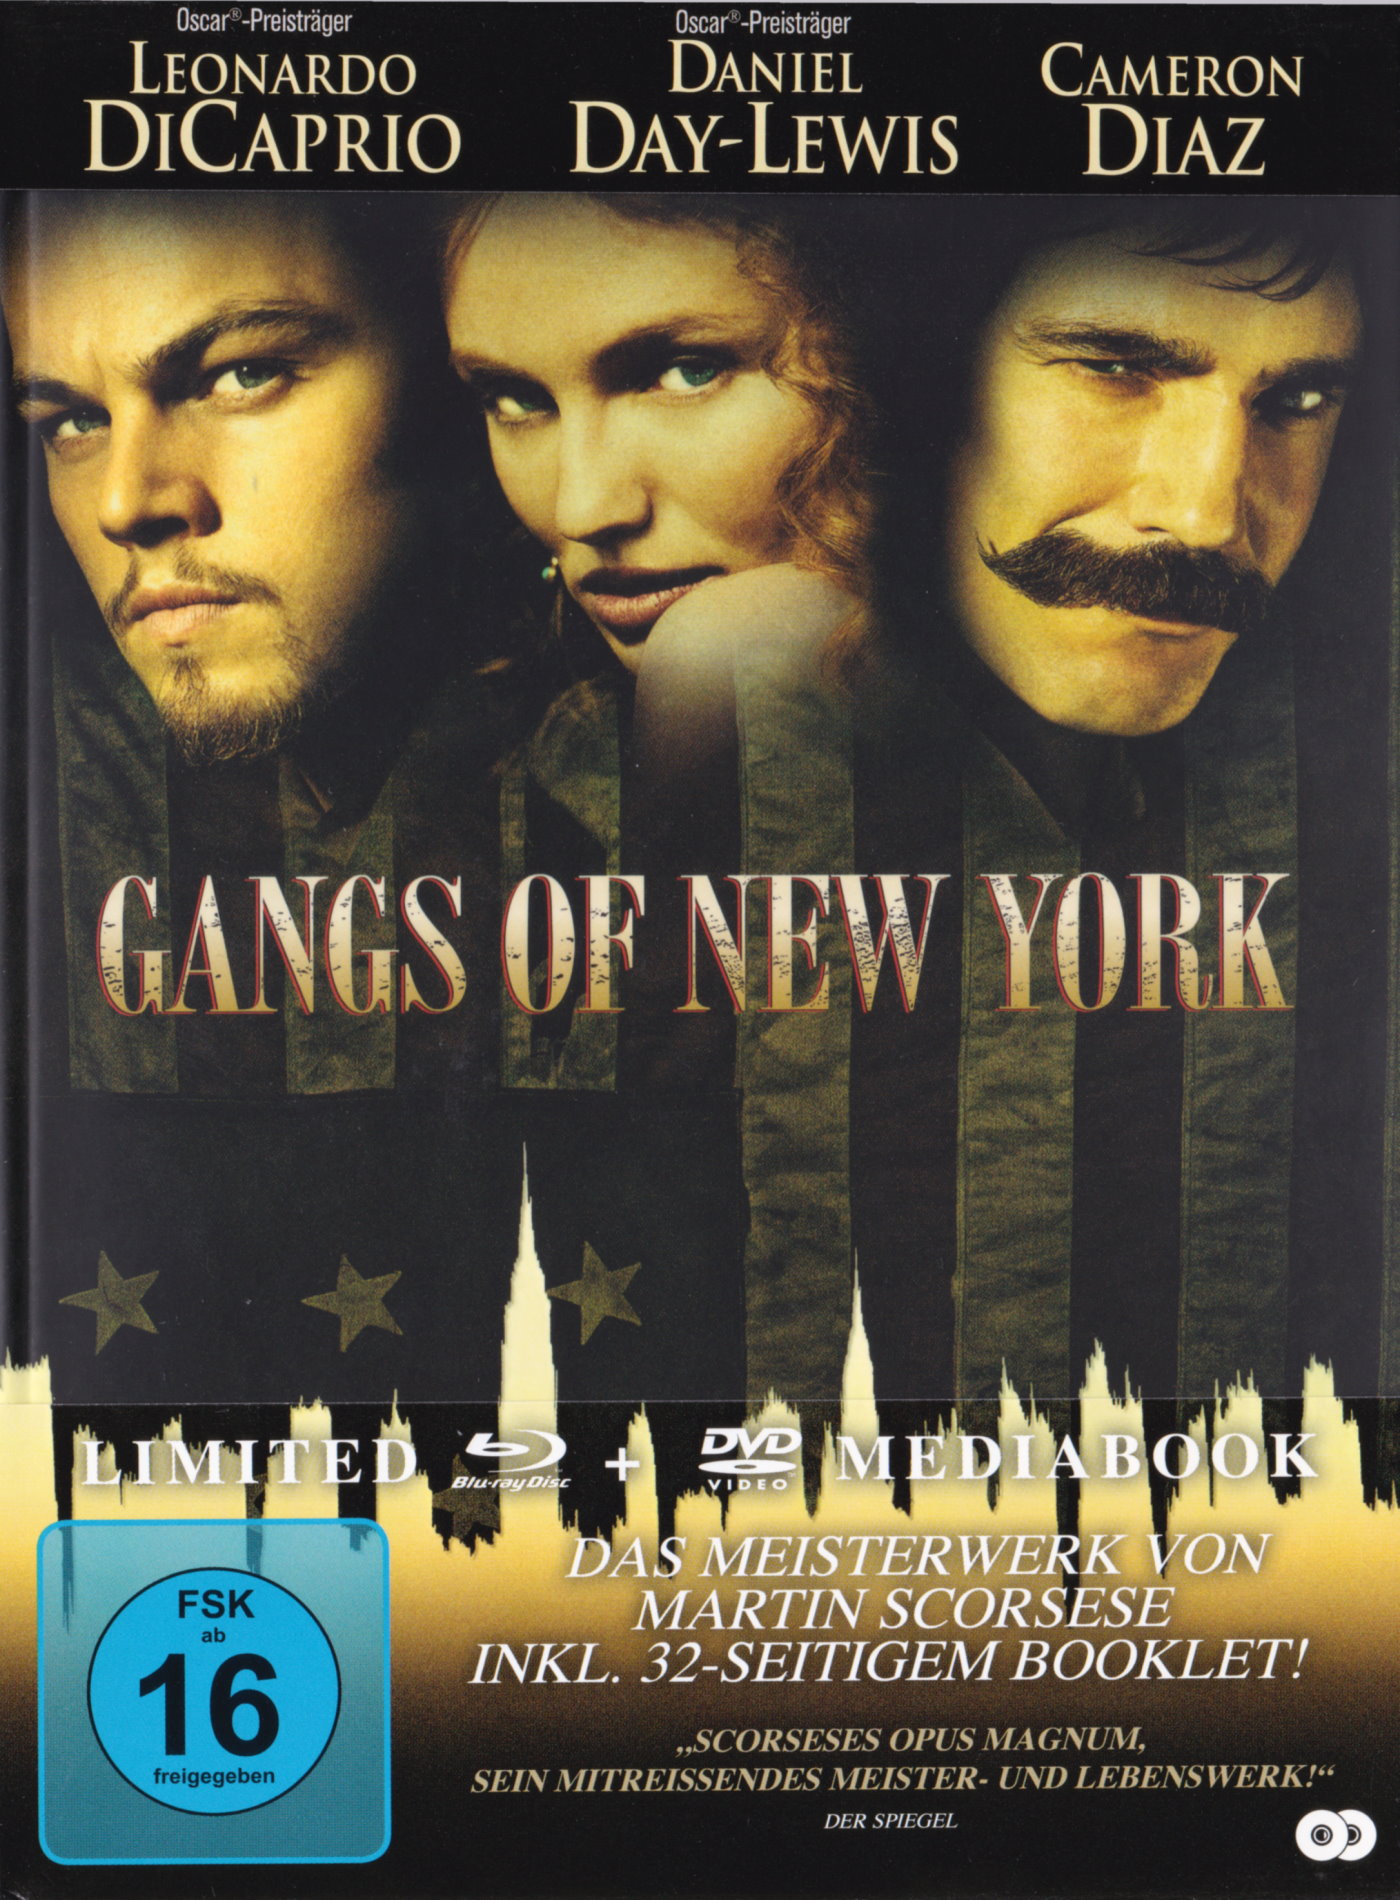 Cover - Gangs of New York.jpg